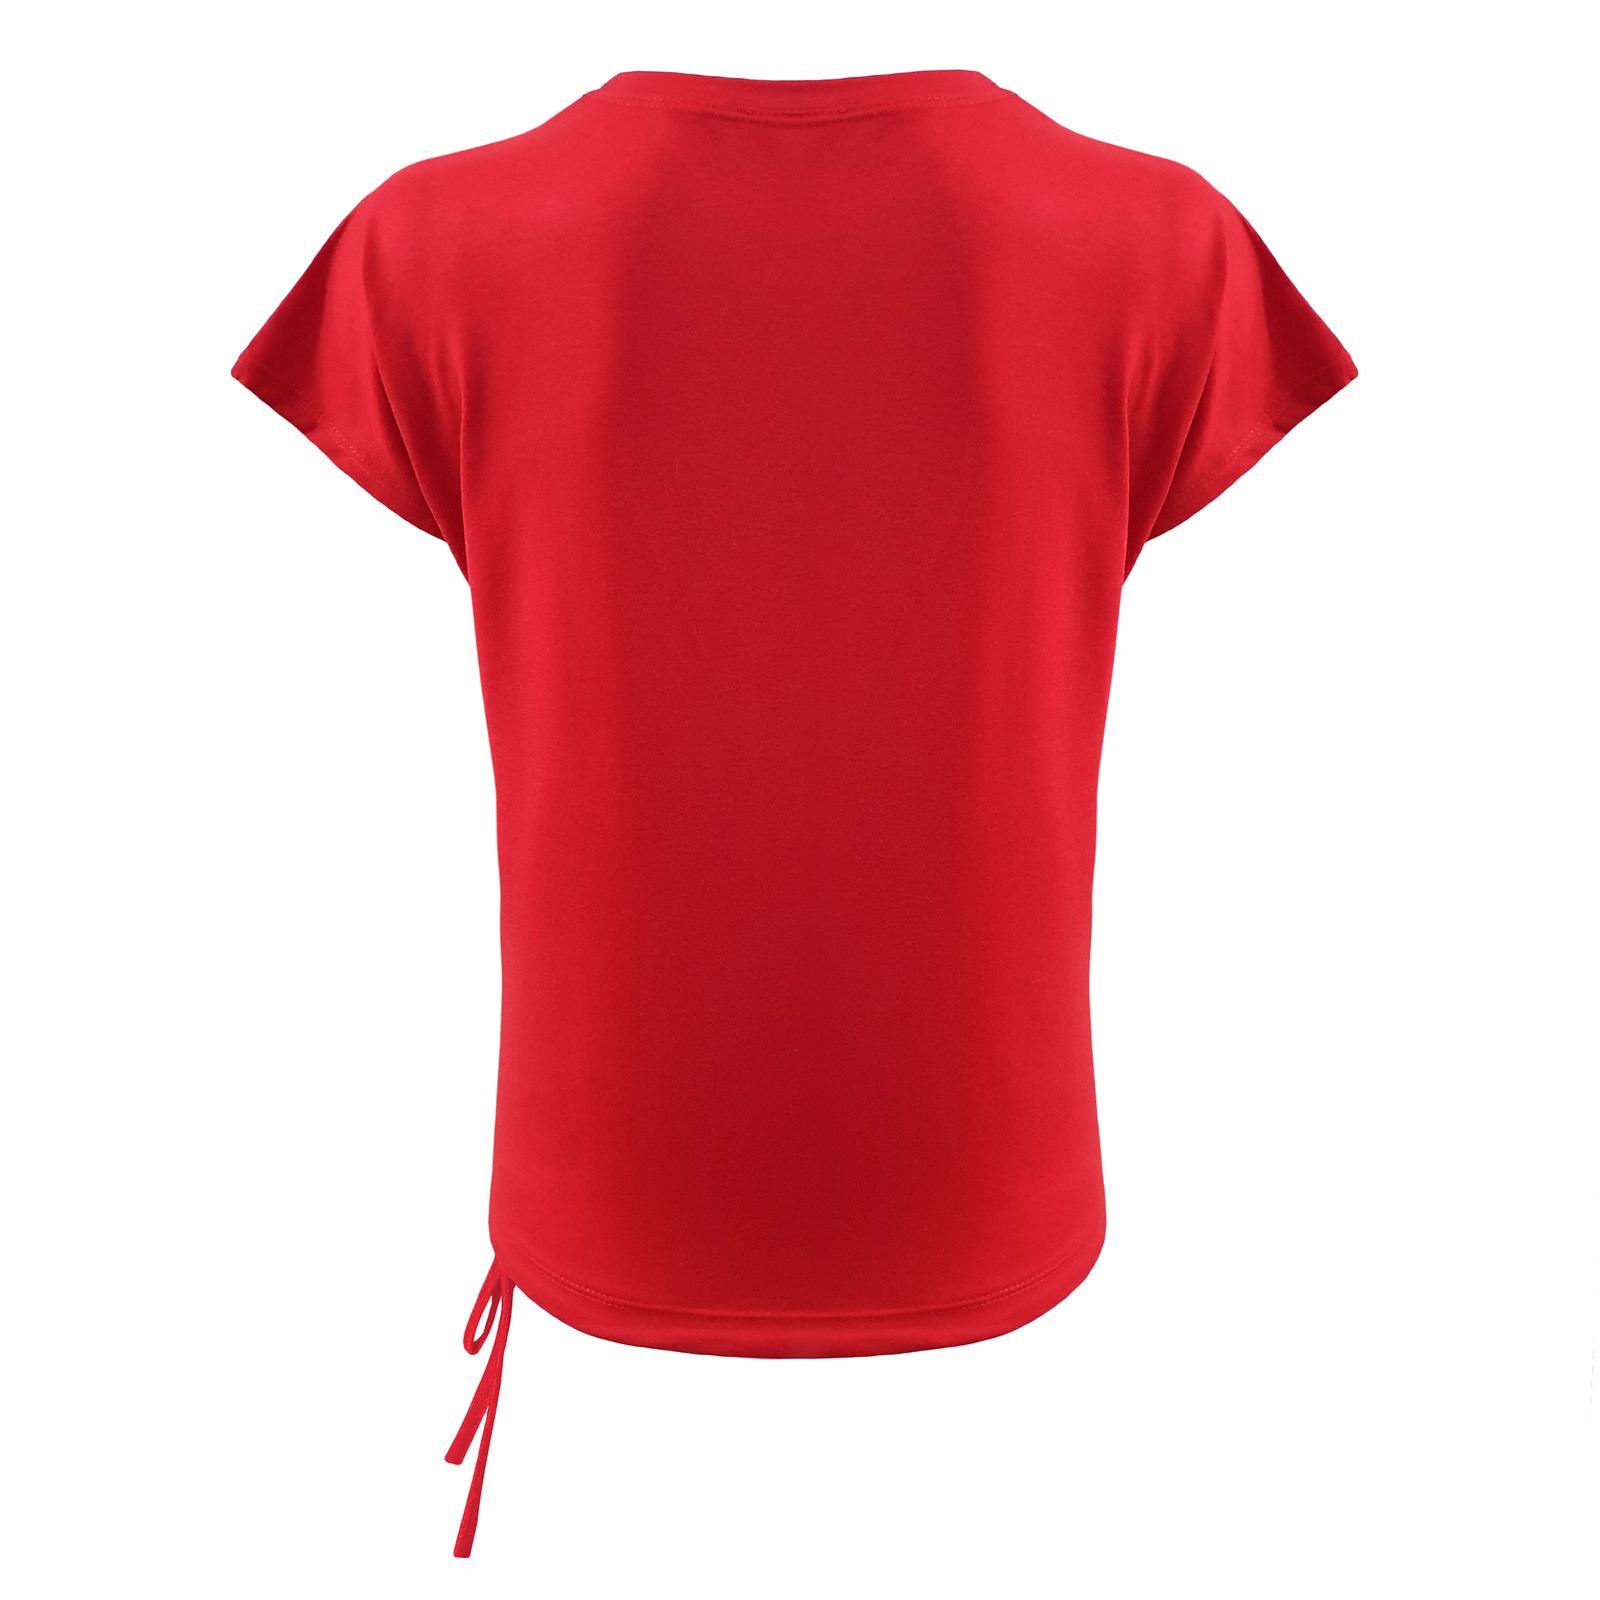 تی شرت زنانه افراتین کد 2544 رنگ قرمز -  - 4